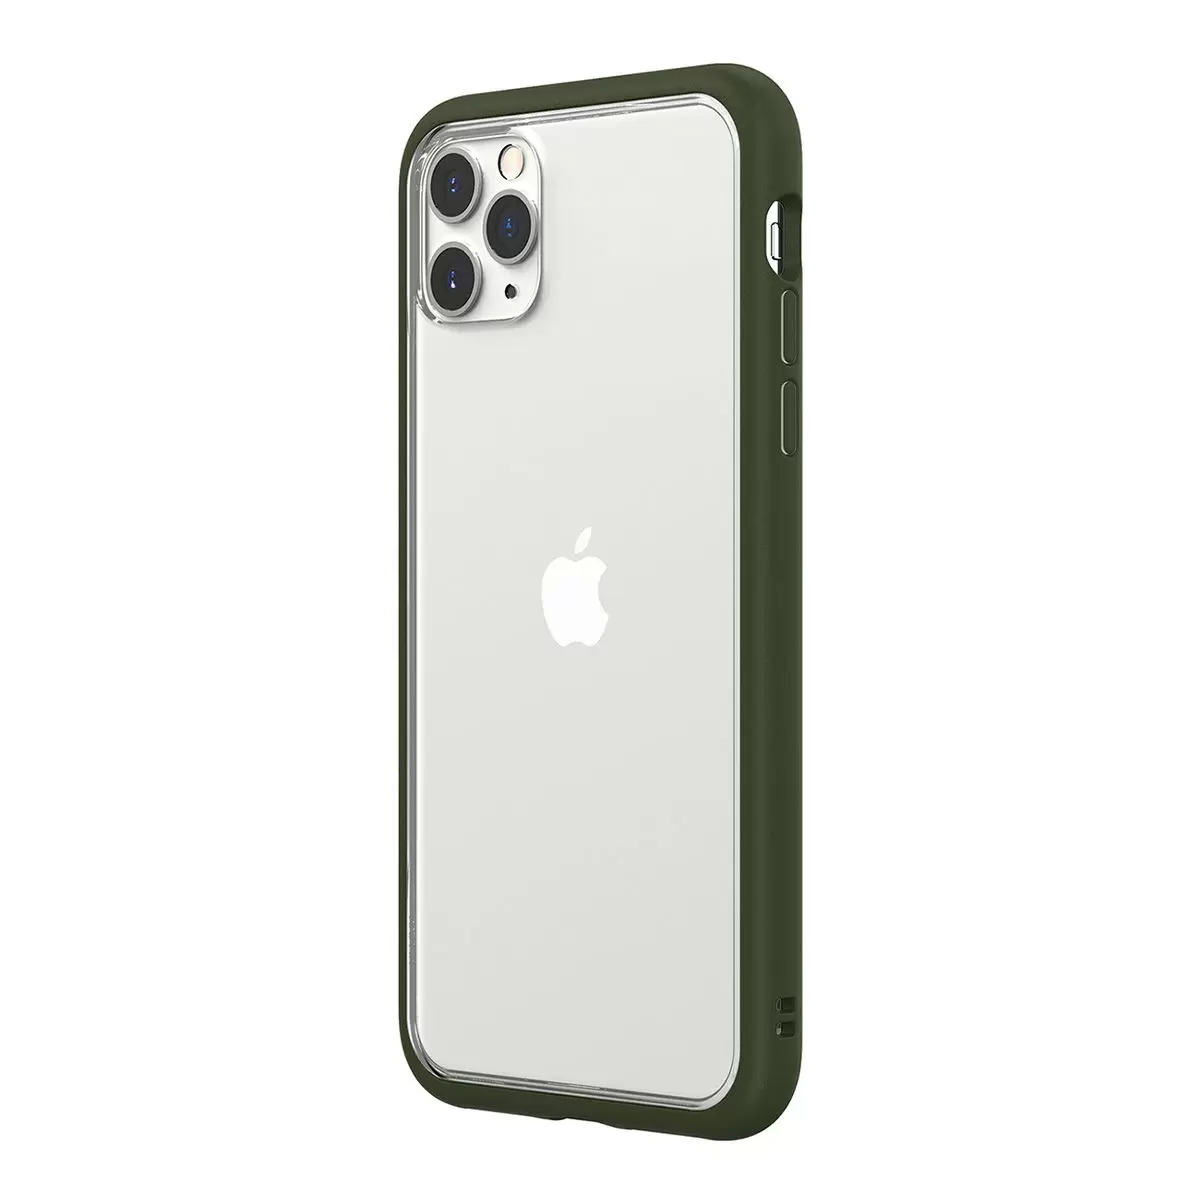 犀牛盾 iPhone 11 Pro Max MOD NX 防摔手機殼 + 9H 3D 滿版螢幕玻璃保護貼 軍綠